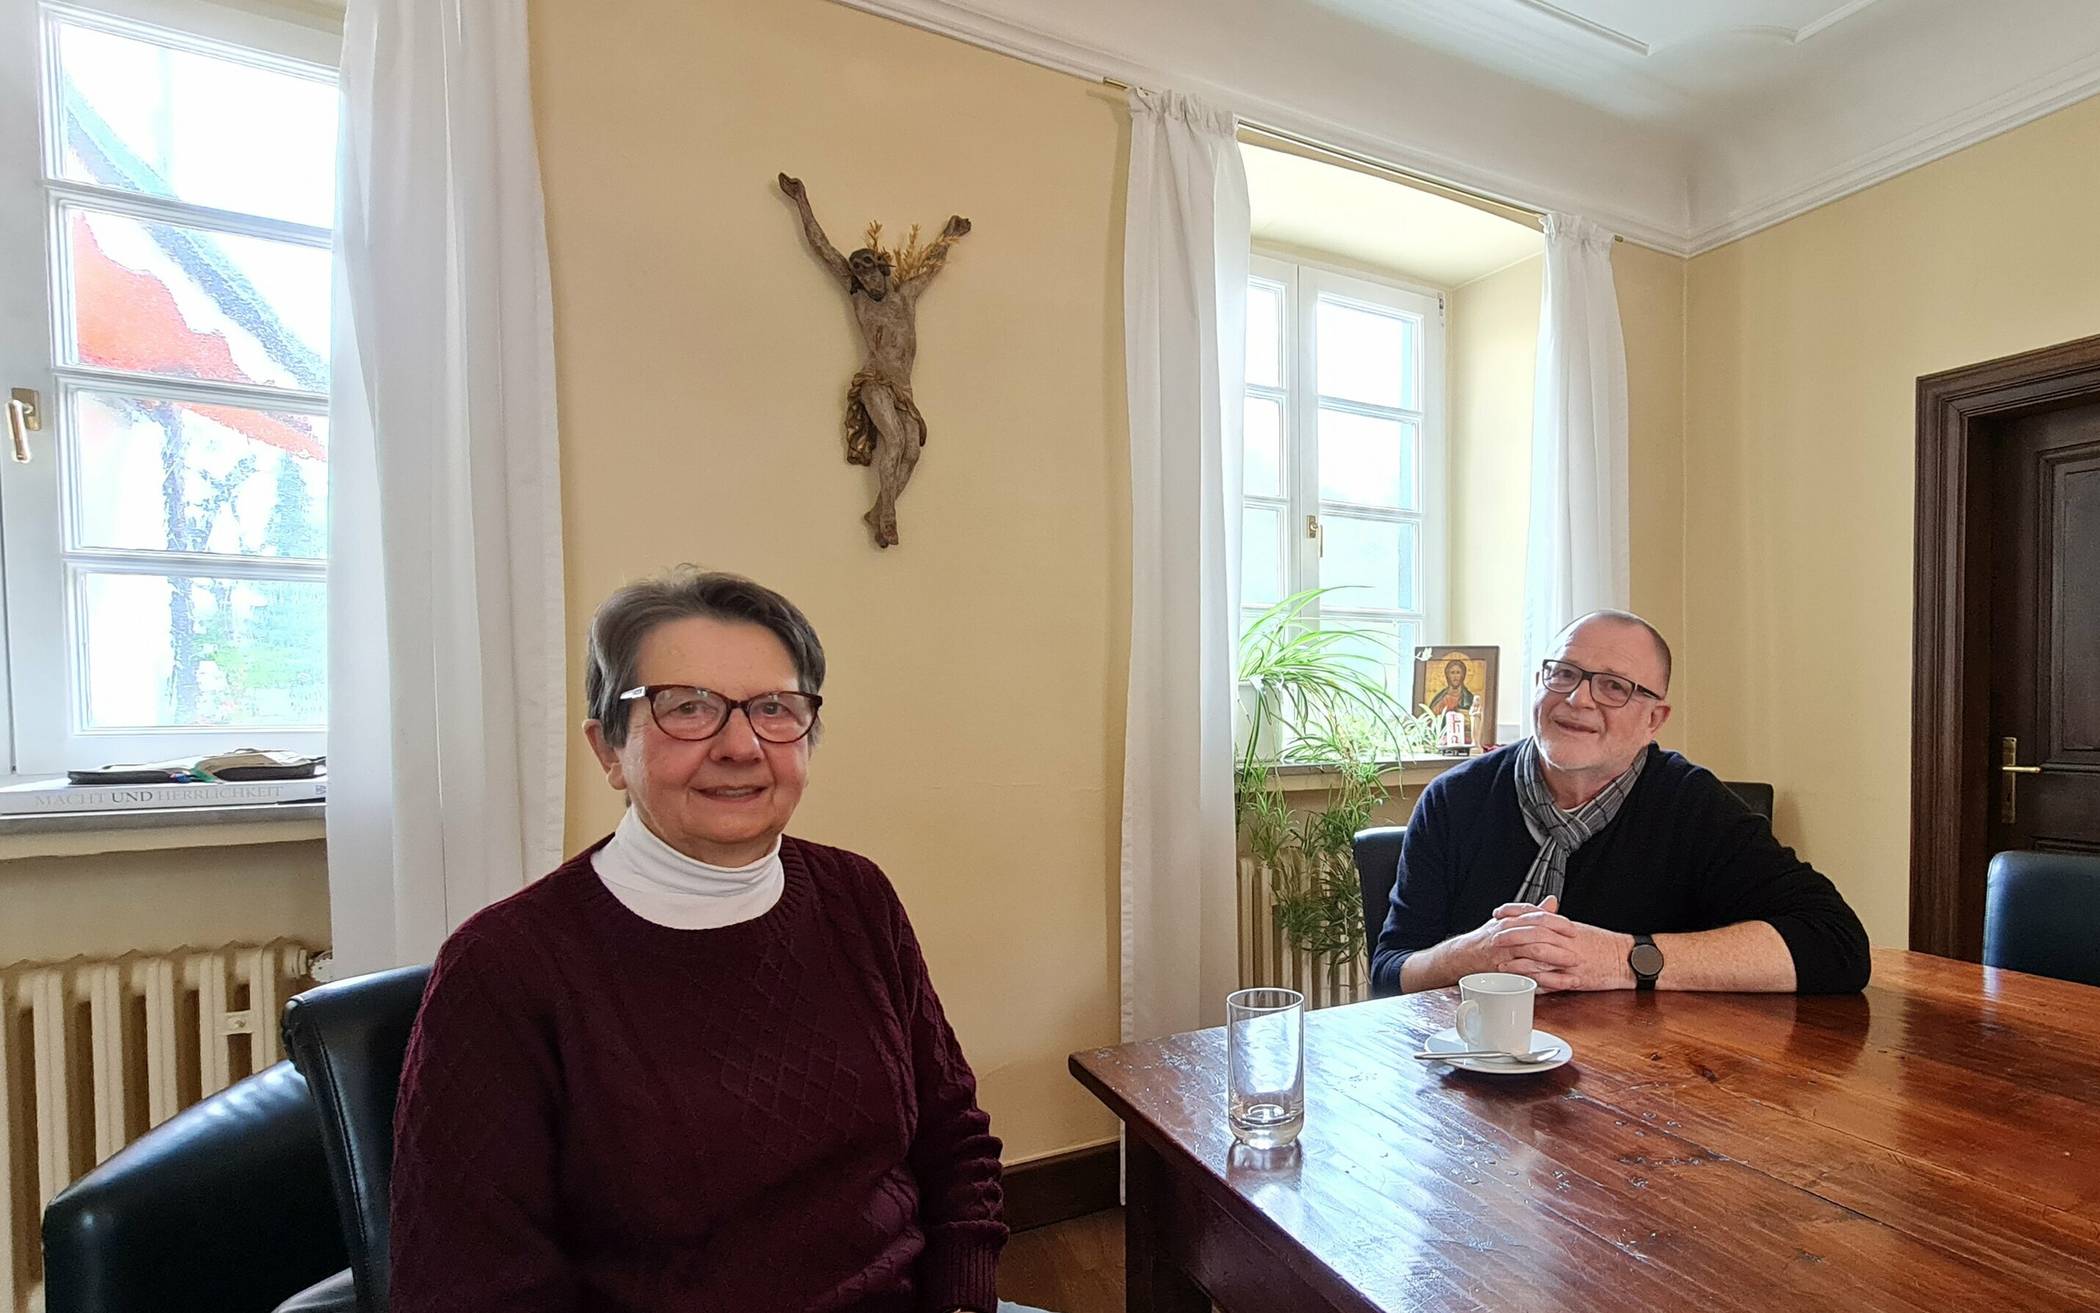  Elisabeth Bayer verlässt nach 30 Jahren den Pfarrgemeinderat. Sie hat zunächst Pastor Johannes Roth und danach Pastor Günter Ernst 22 Jahre während seiner Arbeit begleitet. 